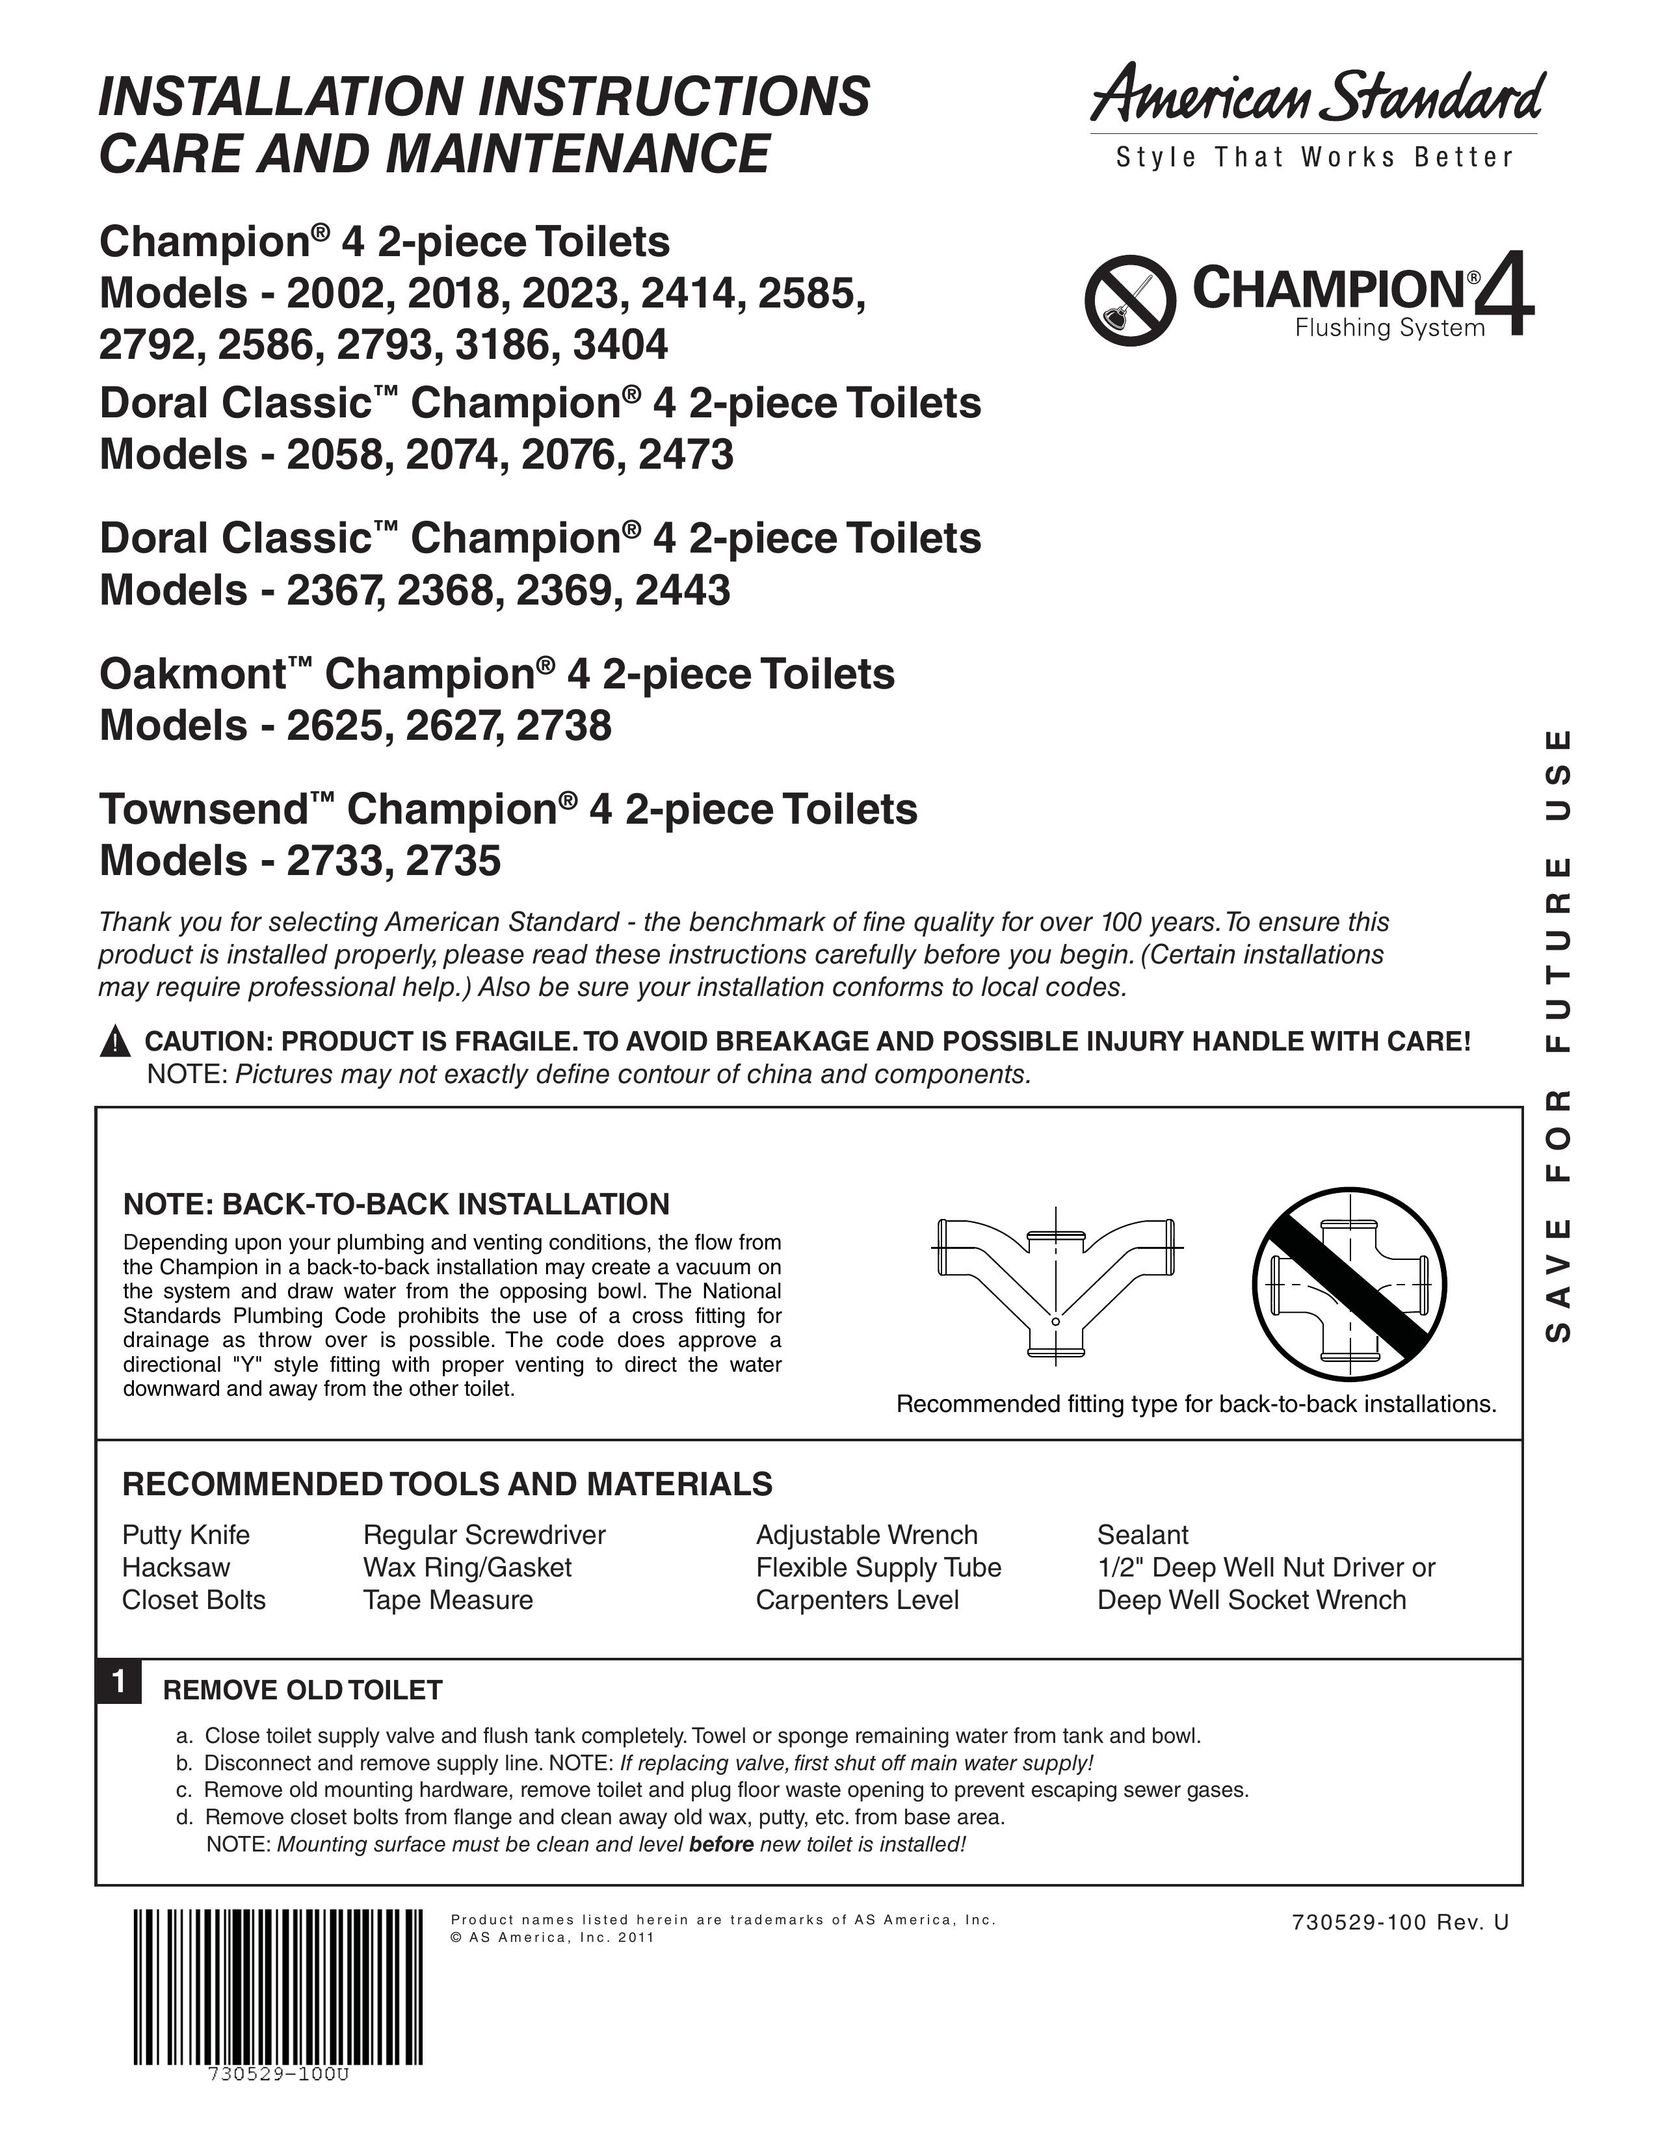 American Standard 2414 Plumbing Product User Manual